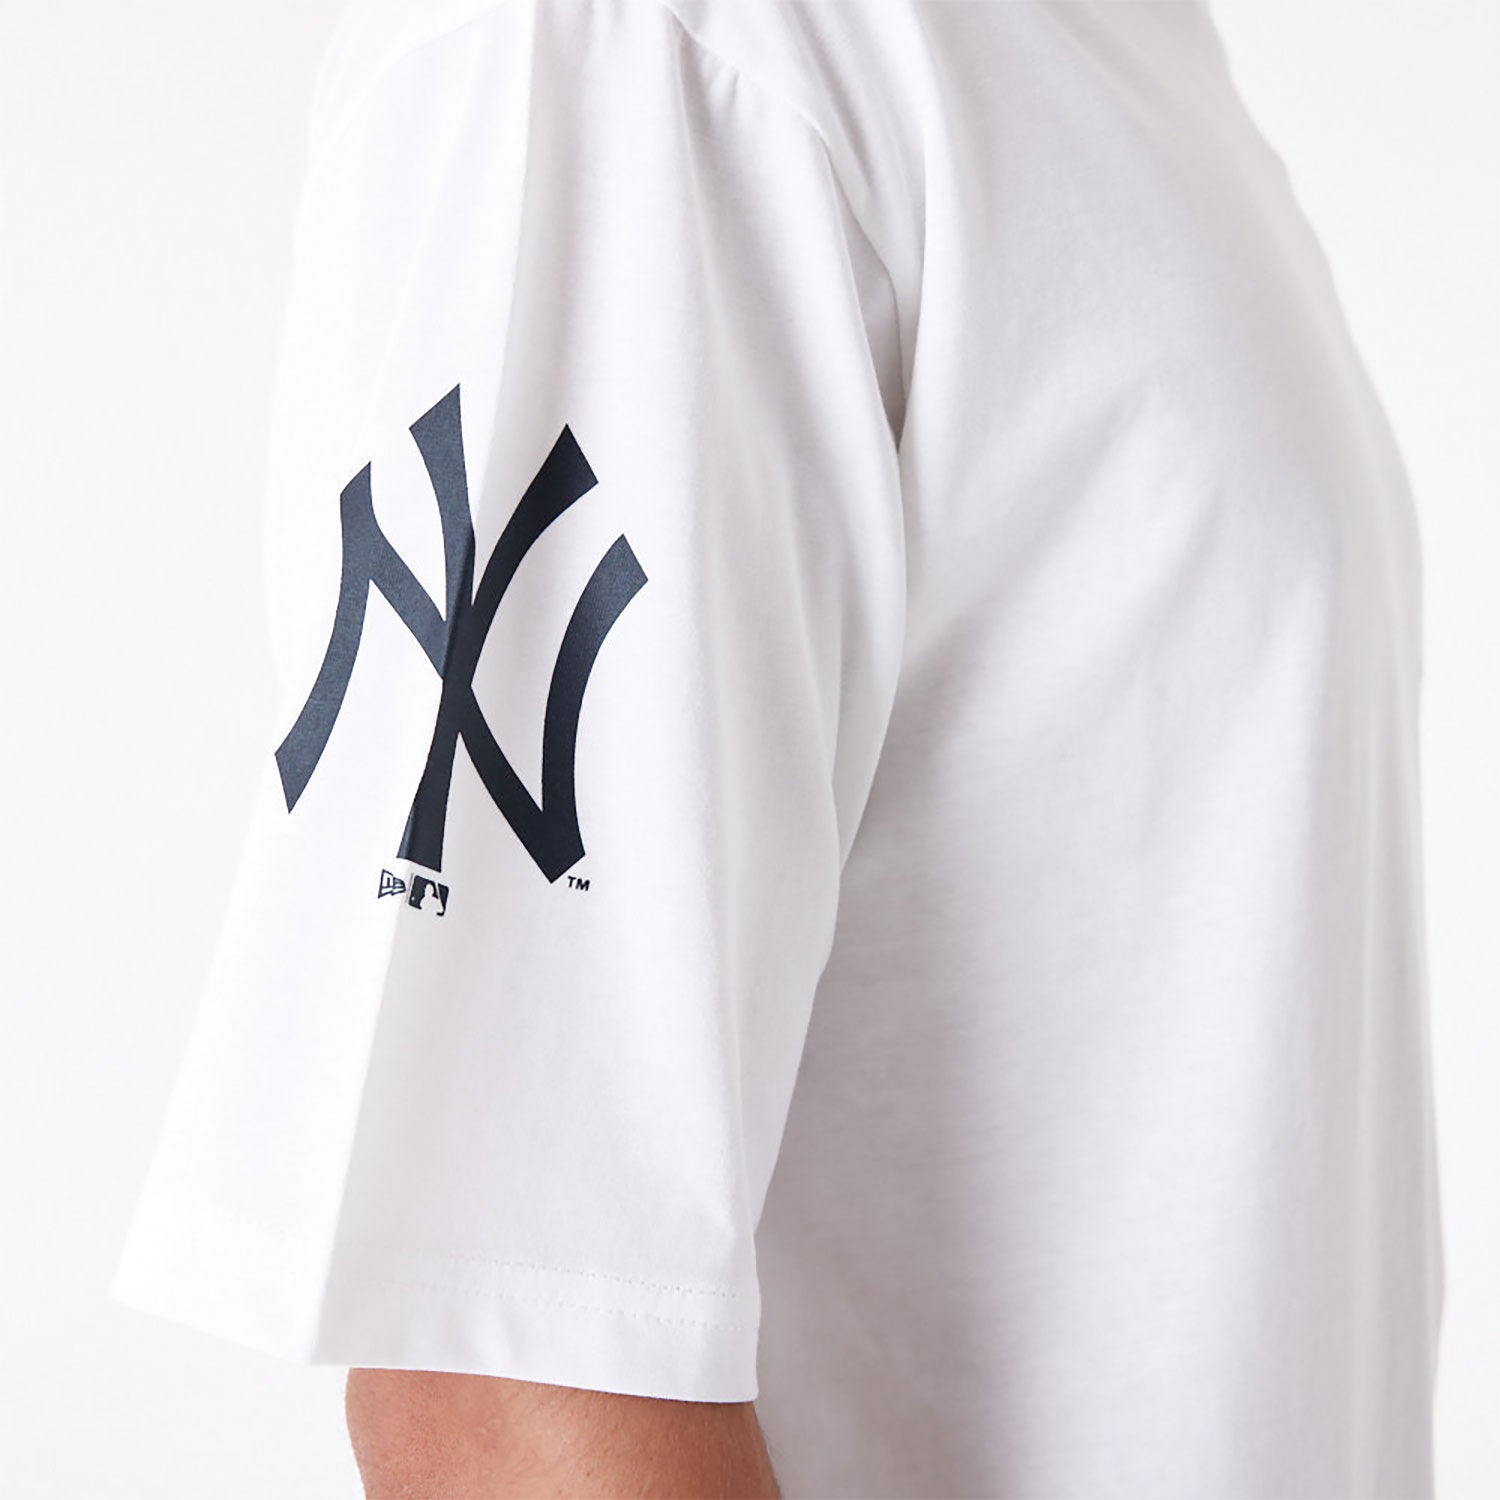 New Era - Baseball Graphic OS T-Shirt - New York Yankees - White/Navy - Headz Up 